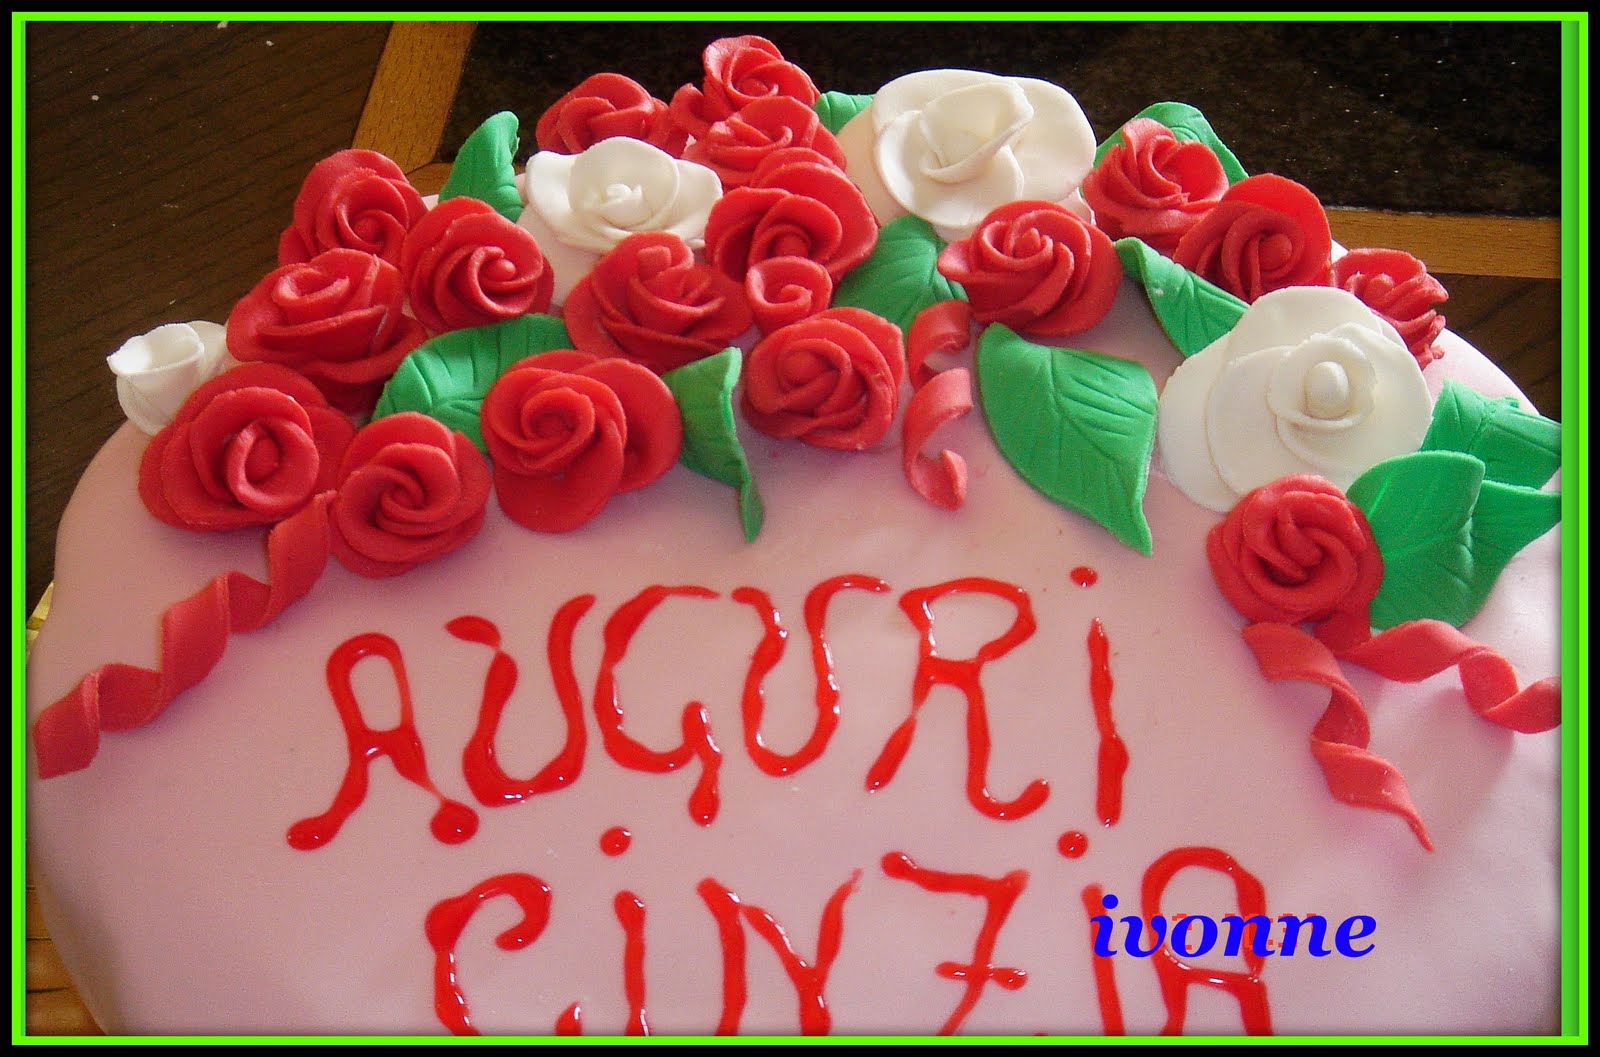 Immagini Buon Compleanno Cinzia